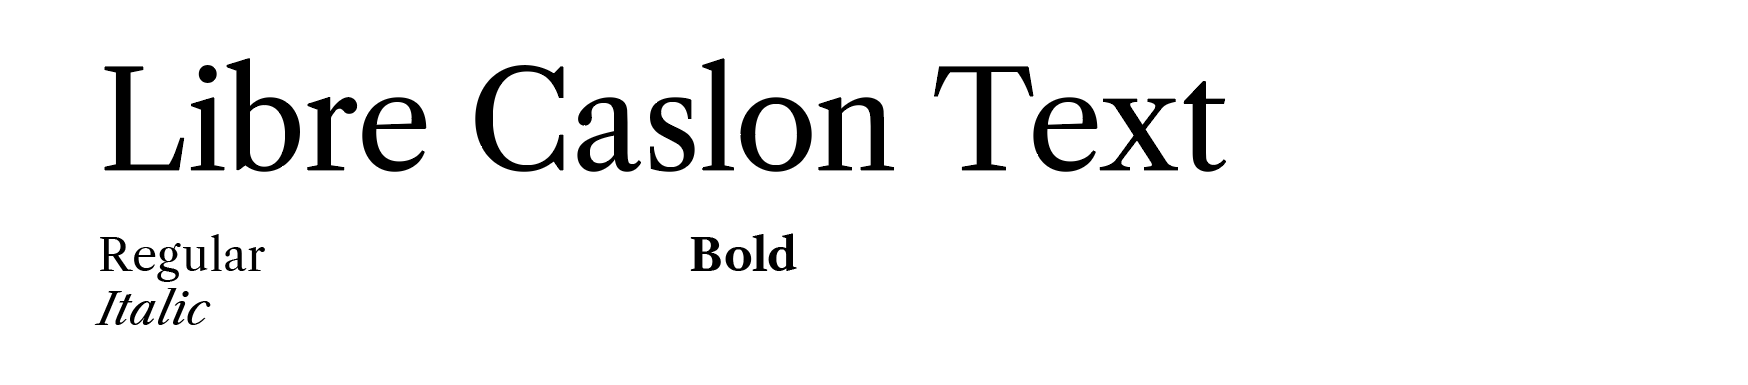 Libre Caslon font examples